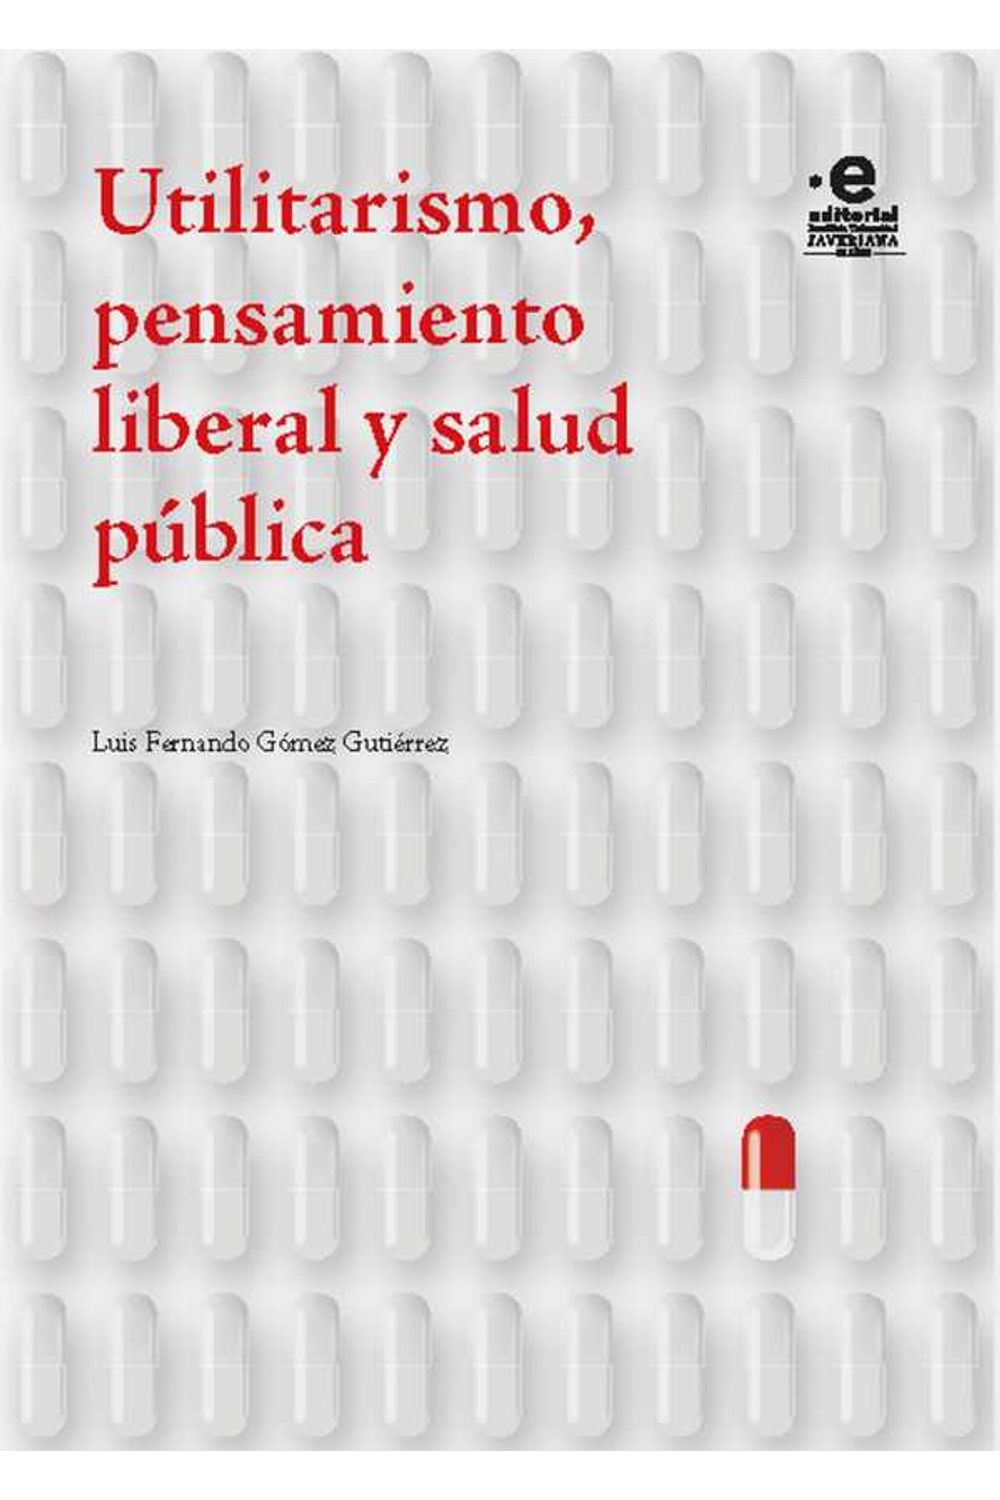 bw-utilitarismo-pensamiento-liberal-y-salud-puacuteblica-editorial-pontificia-universidad-javeriana-9789587814637